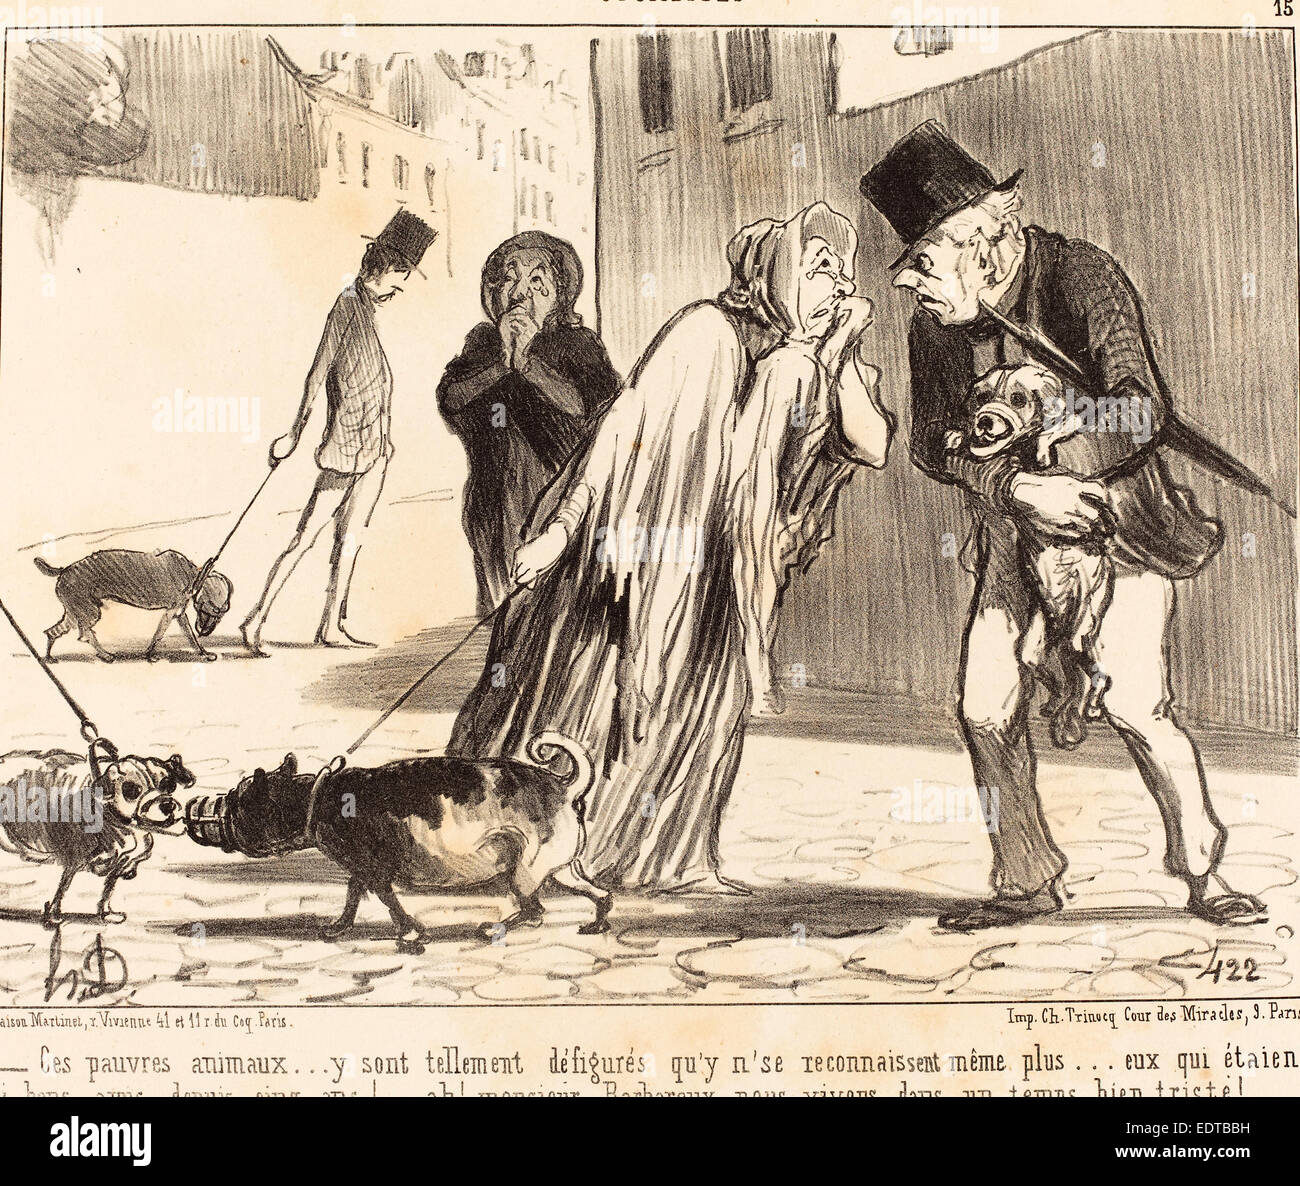 Honoré Daumier (French, 1808 - 1879), Ces pauvres animaux n'se reconnaissent plus, 1852, lithograph Stock Photo